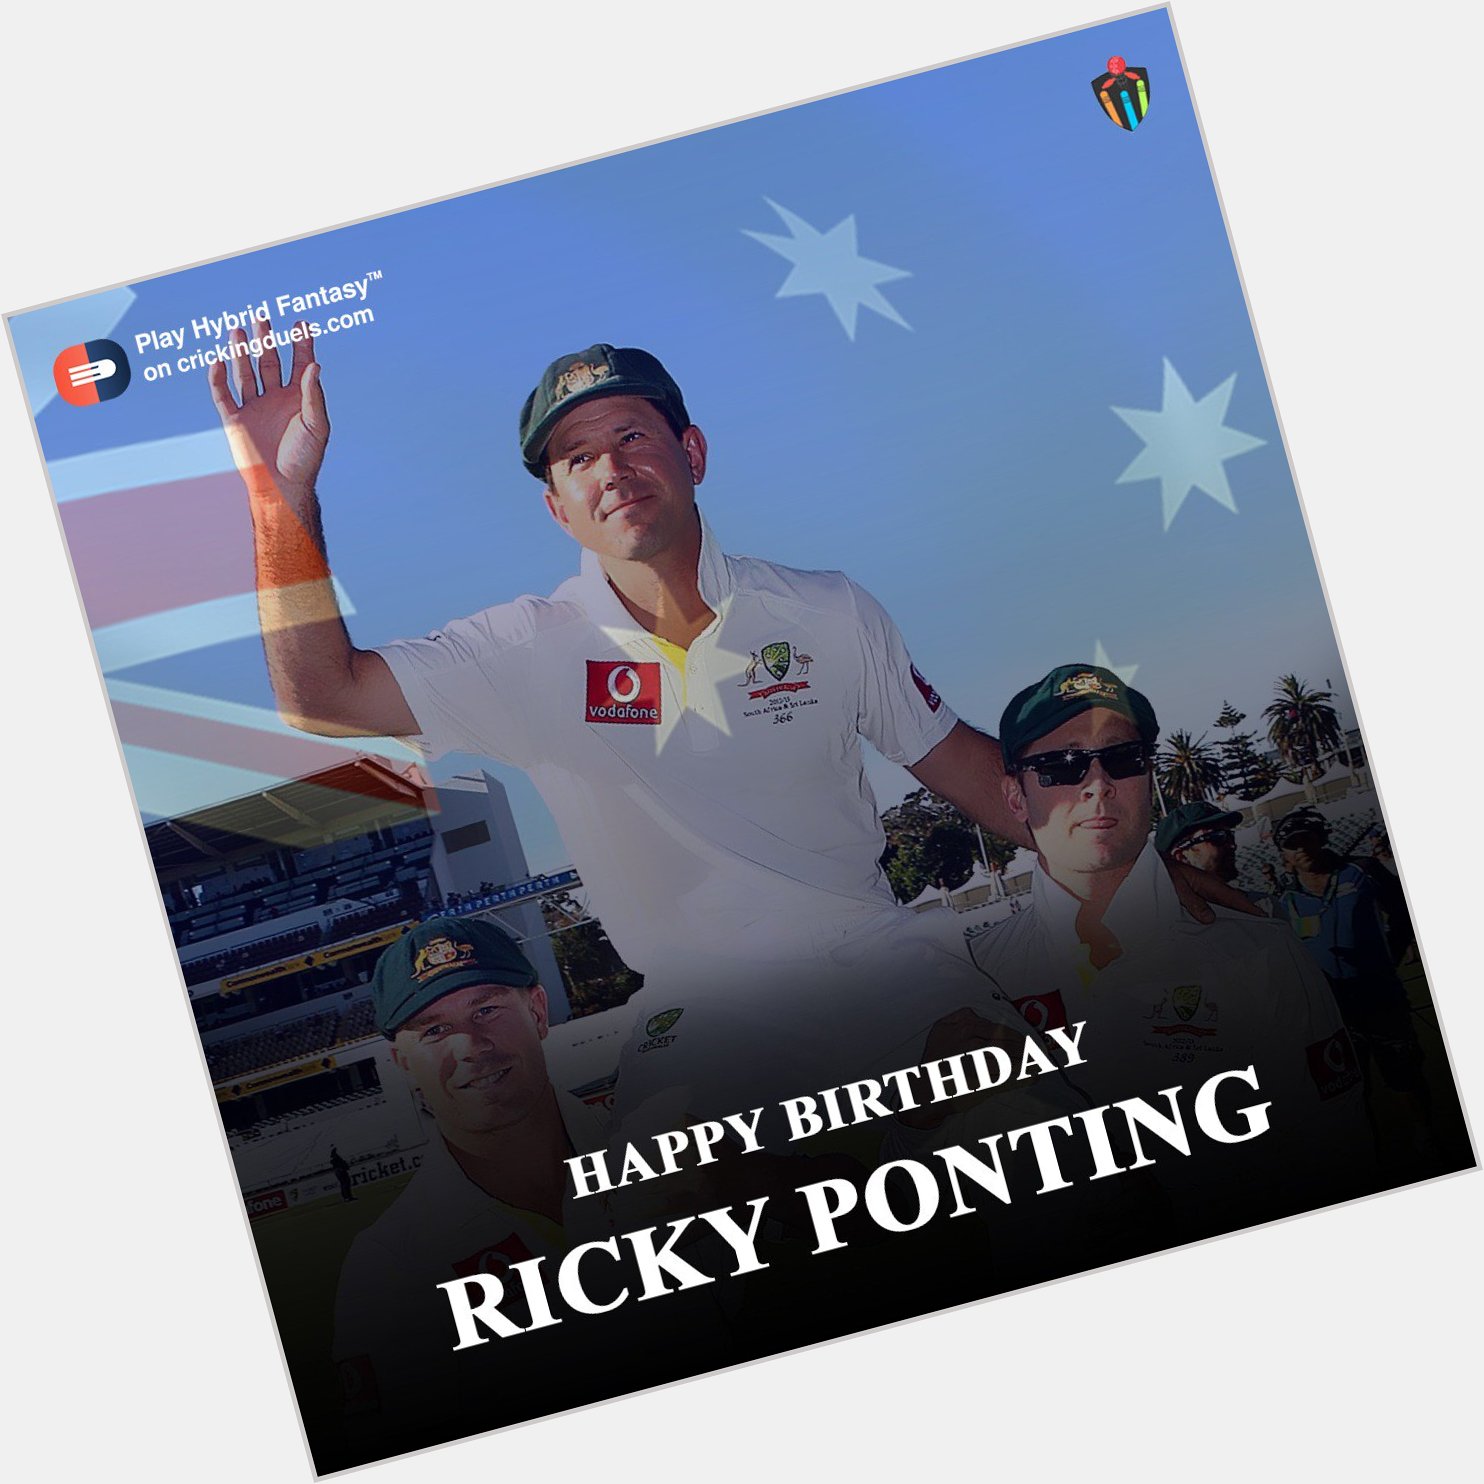 Happy birthday, Ricky Ponting. 